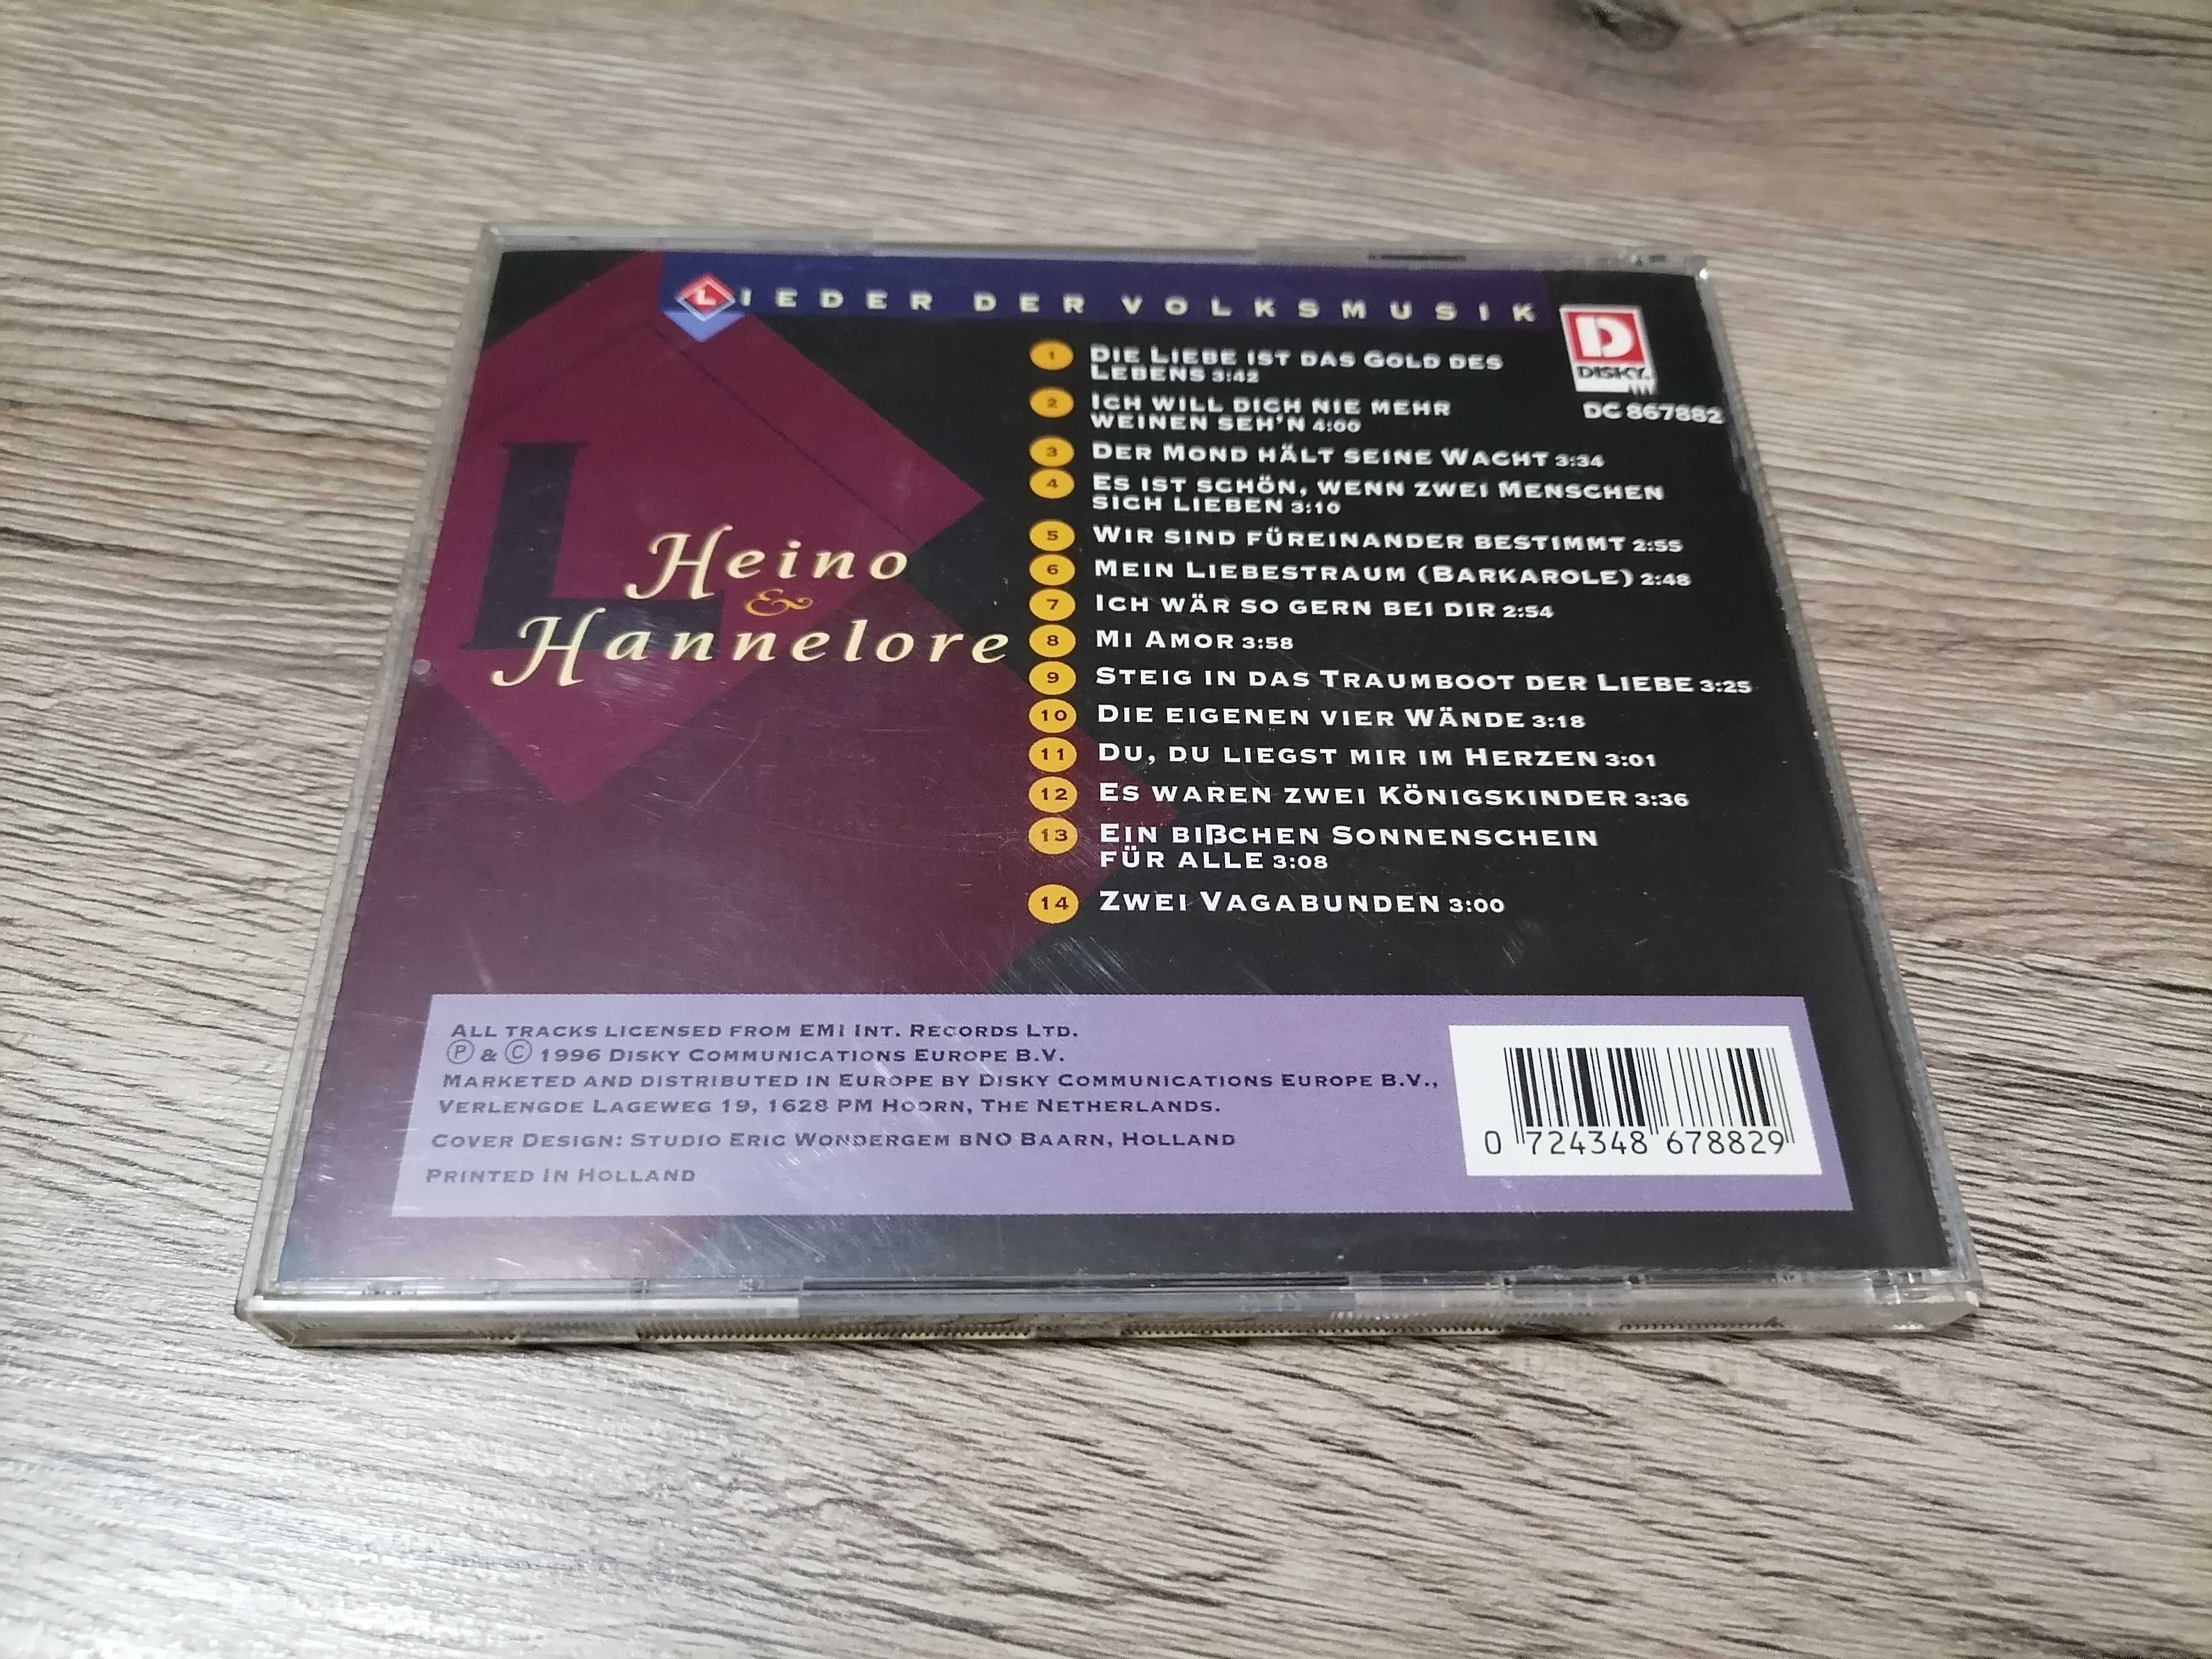 Heino & Hannelore – Lieder Der Volksmusik CD